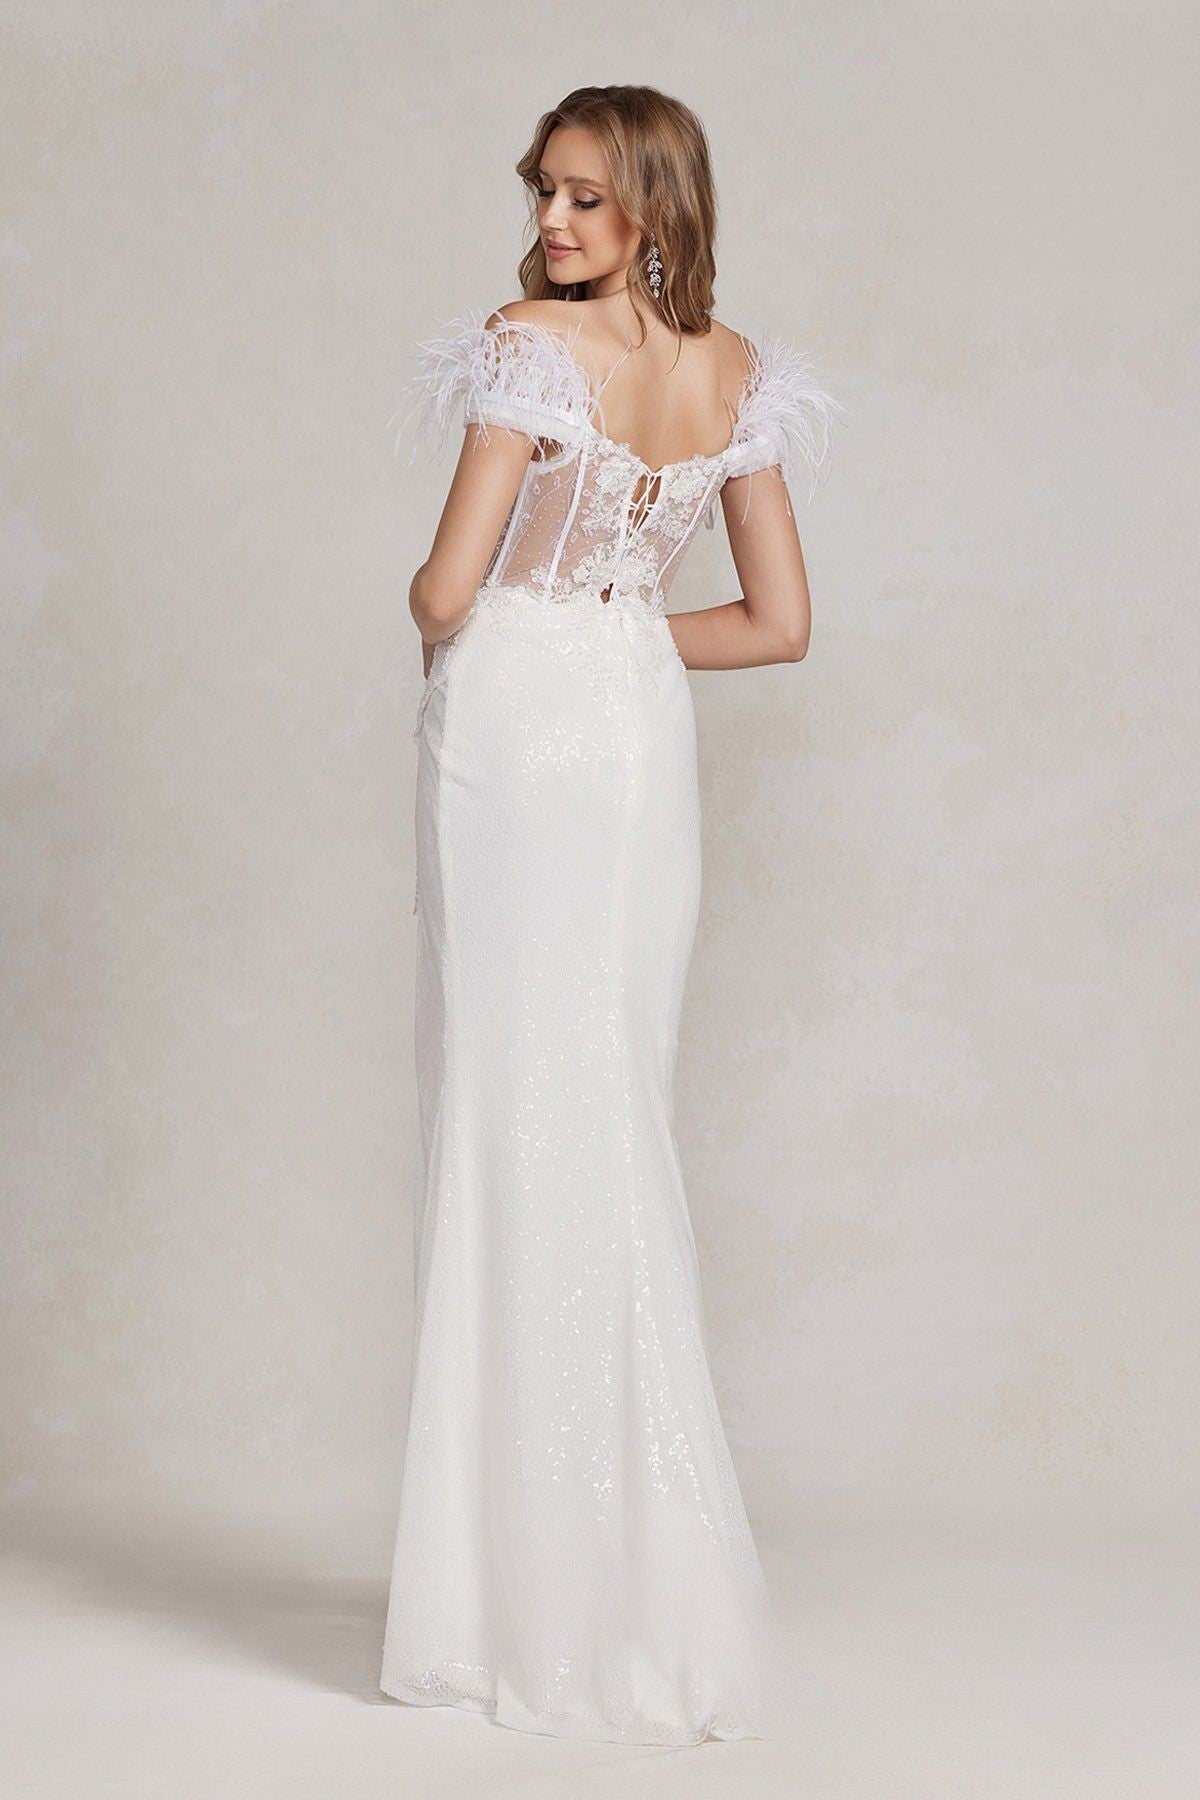 Feather Embellished Sheer Bodice Side Slit Long Wedding Dress NXS1229W-Wedding Dress-smcfashion.com